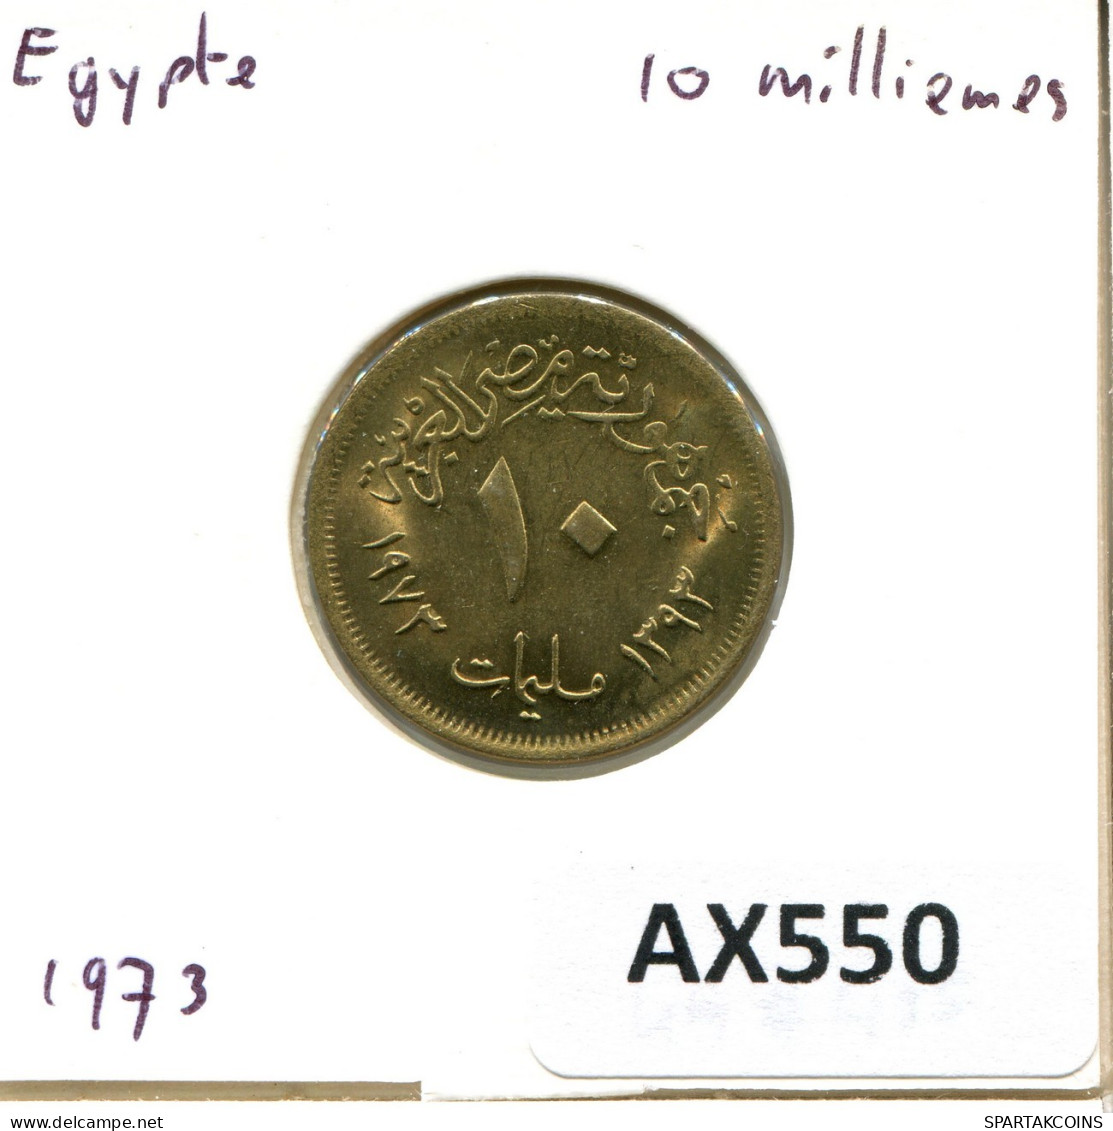 10 MILLIEMES 1973 ÄGYPTEN EGYPT Islamisch Münze #AX550.D.A - Aegypten